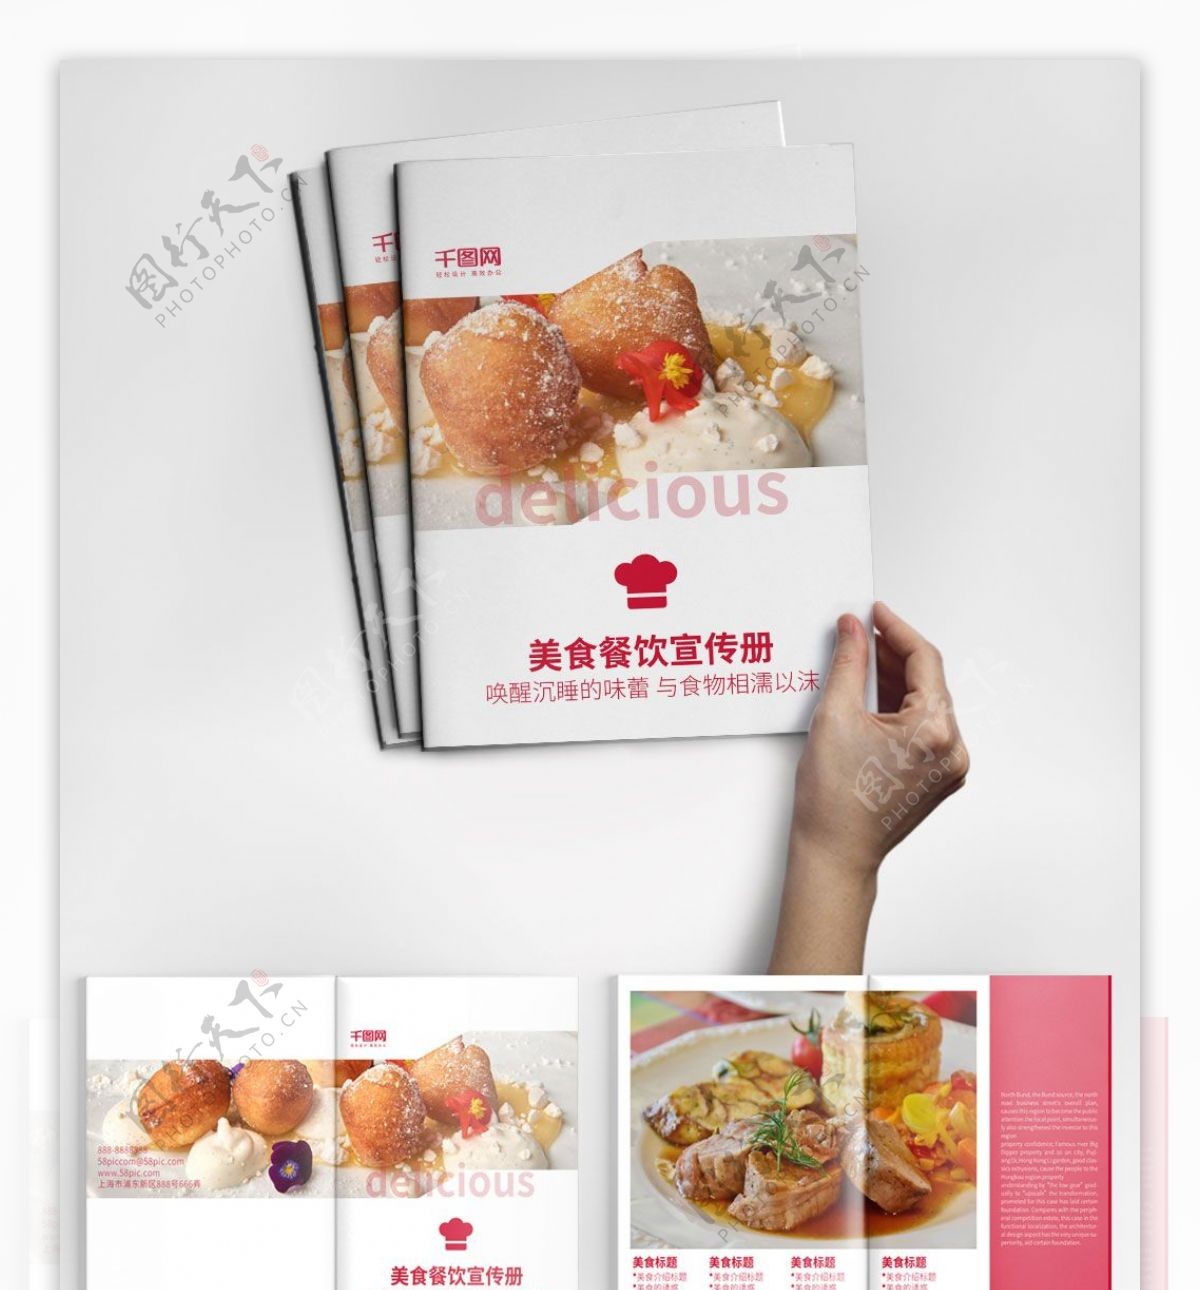 餐厅美食菜单餐饮宣传画册设计PSD模板